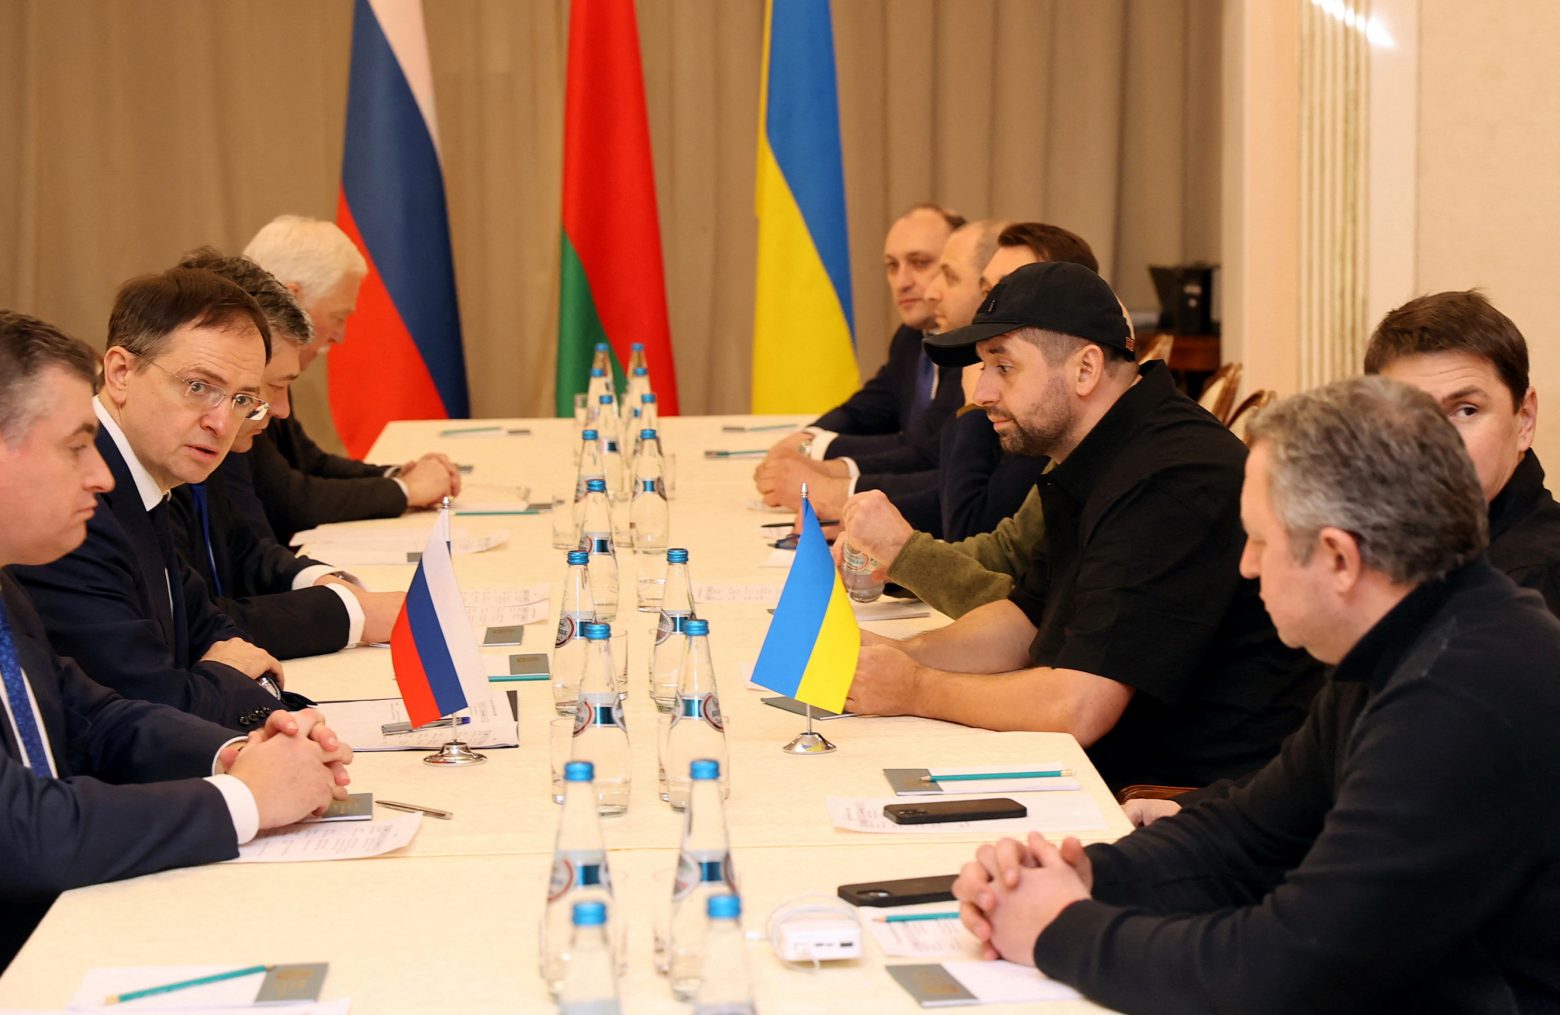 Πόλεμος στην Ουκρανία: Αναβάλλονται για την Πέμπτη οι συνομιλίες, σύμφωνα με τους Ρώσους